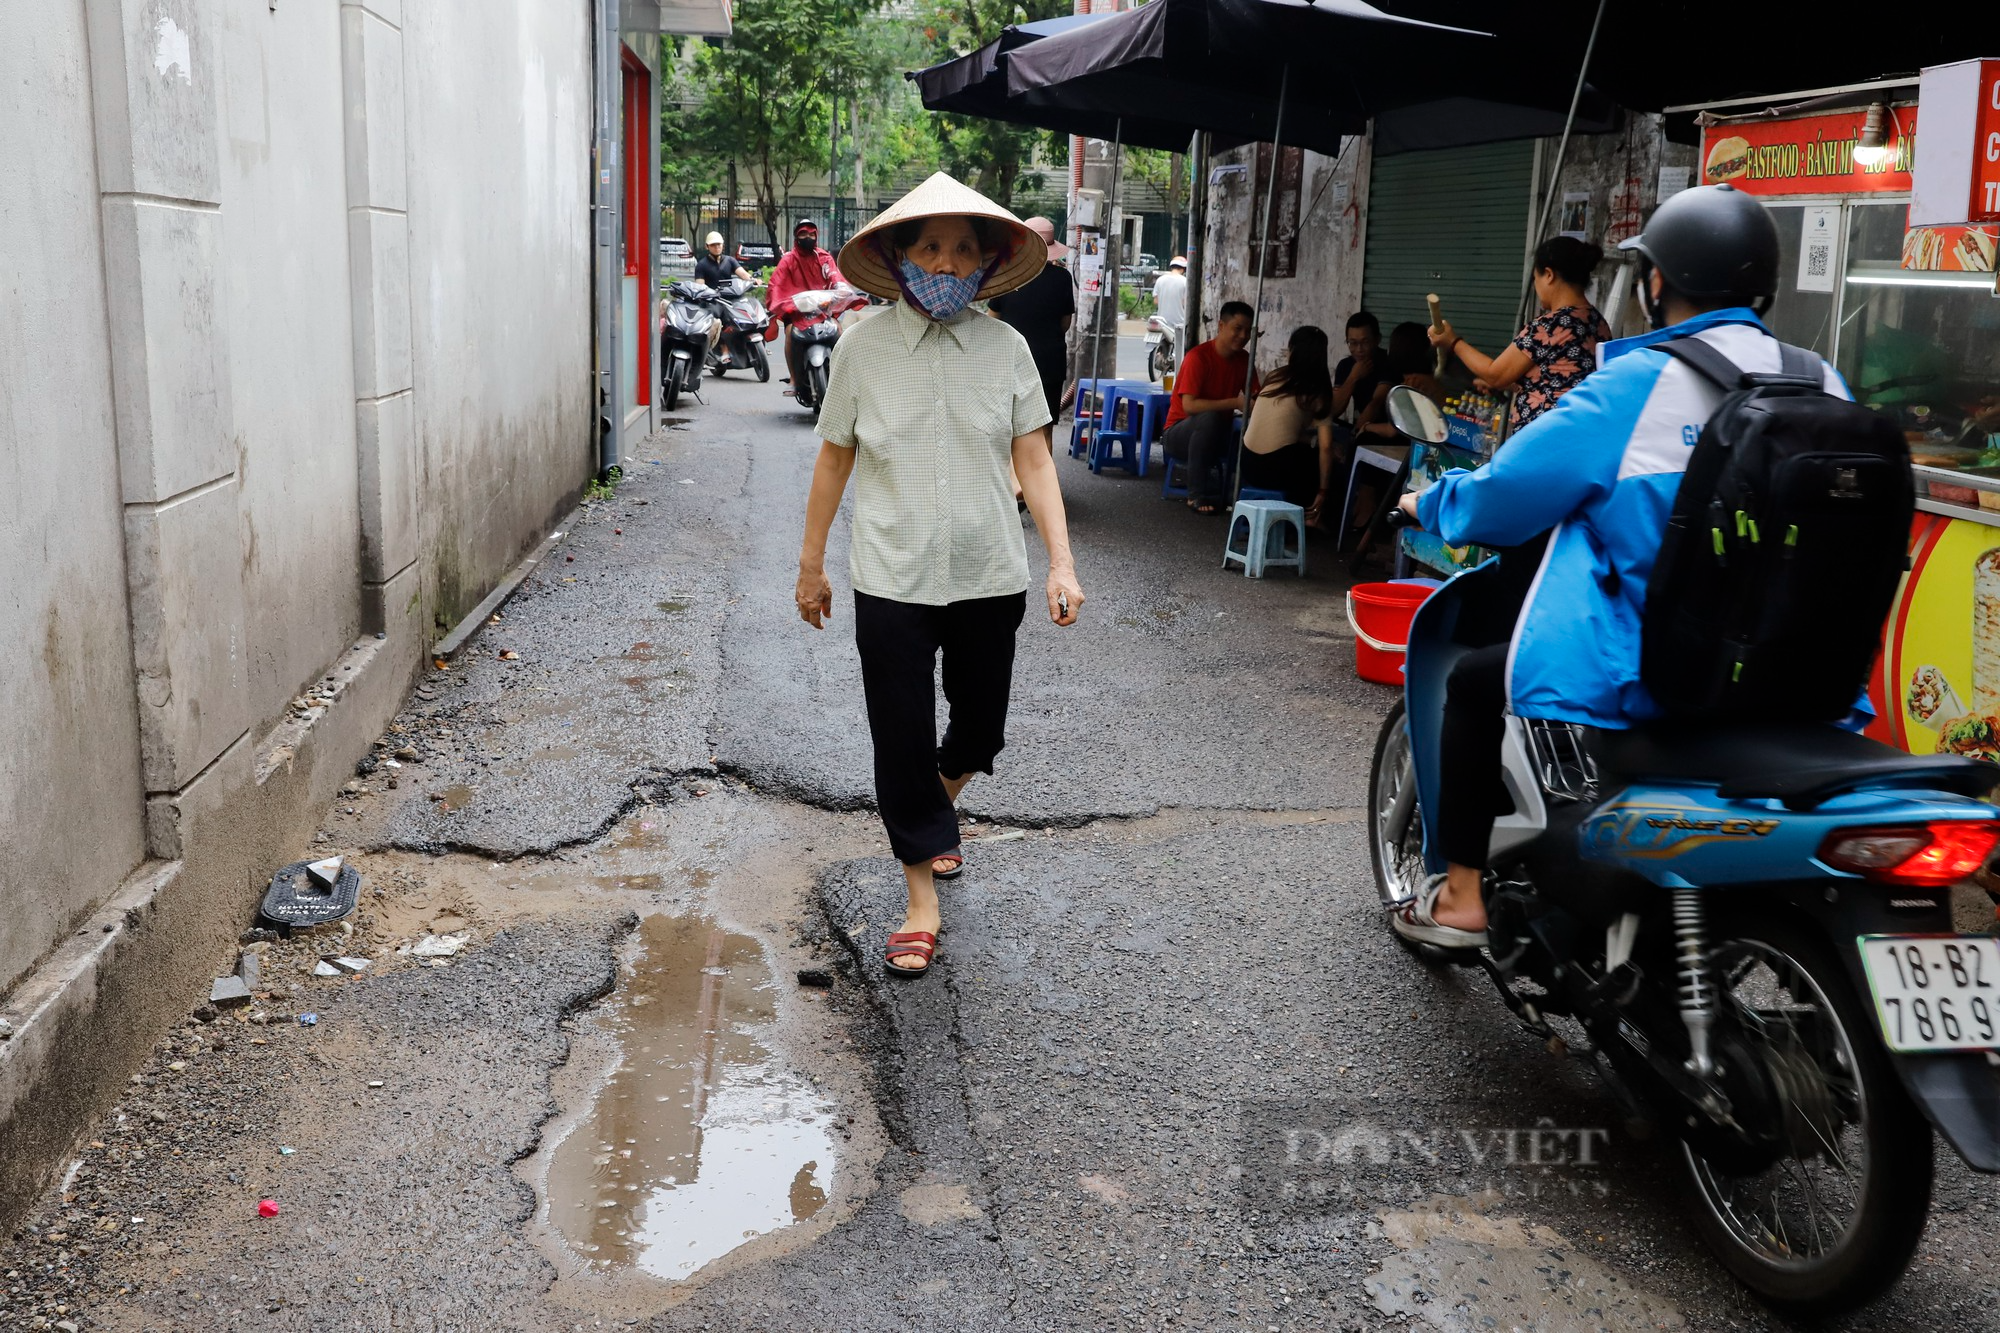 Đoạn đường dài 500m tại Hà Nội bị băm nát, chi chít những &quot;vết sẹo&quot; như bẫy người đi đường - Ảnh 3.